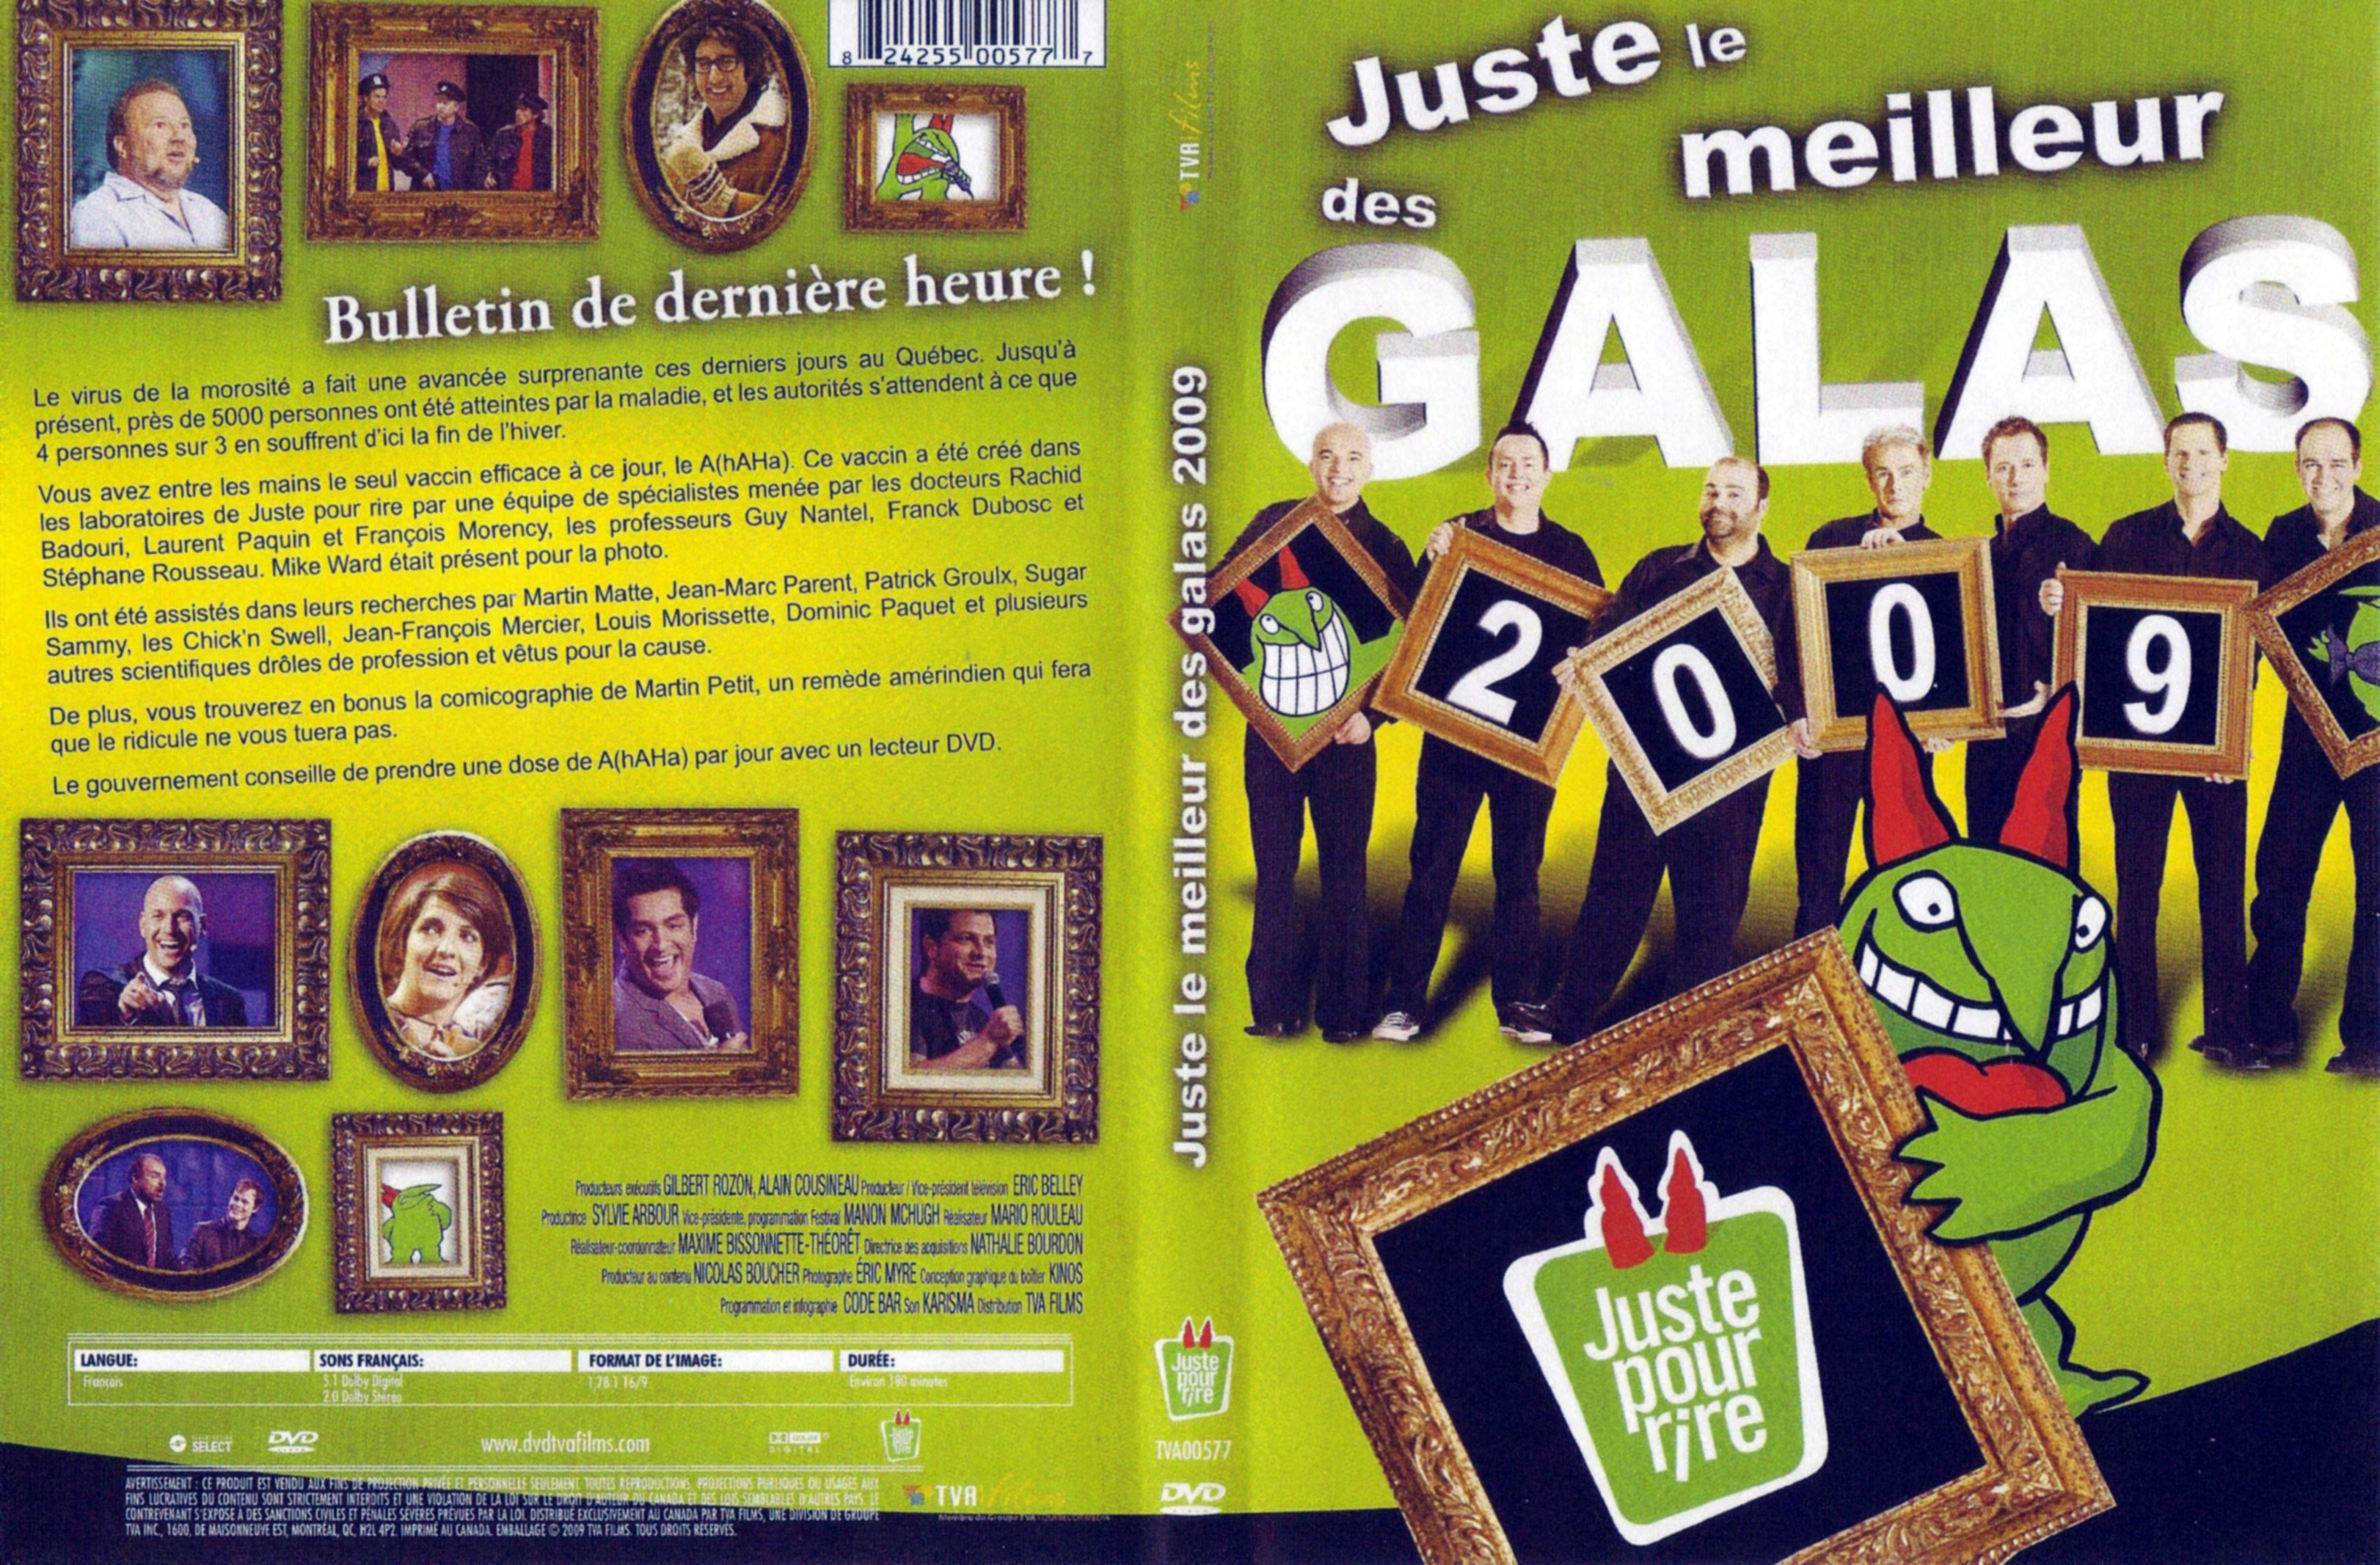 Jaquette DVD Juste le meilleur des galas 2009